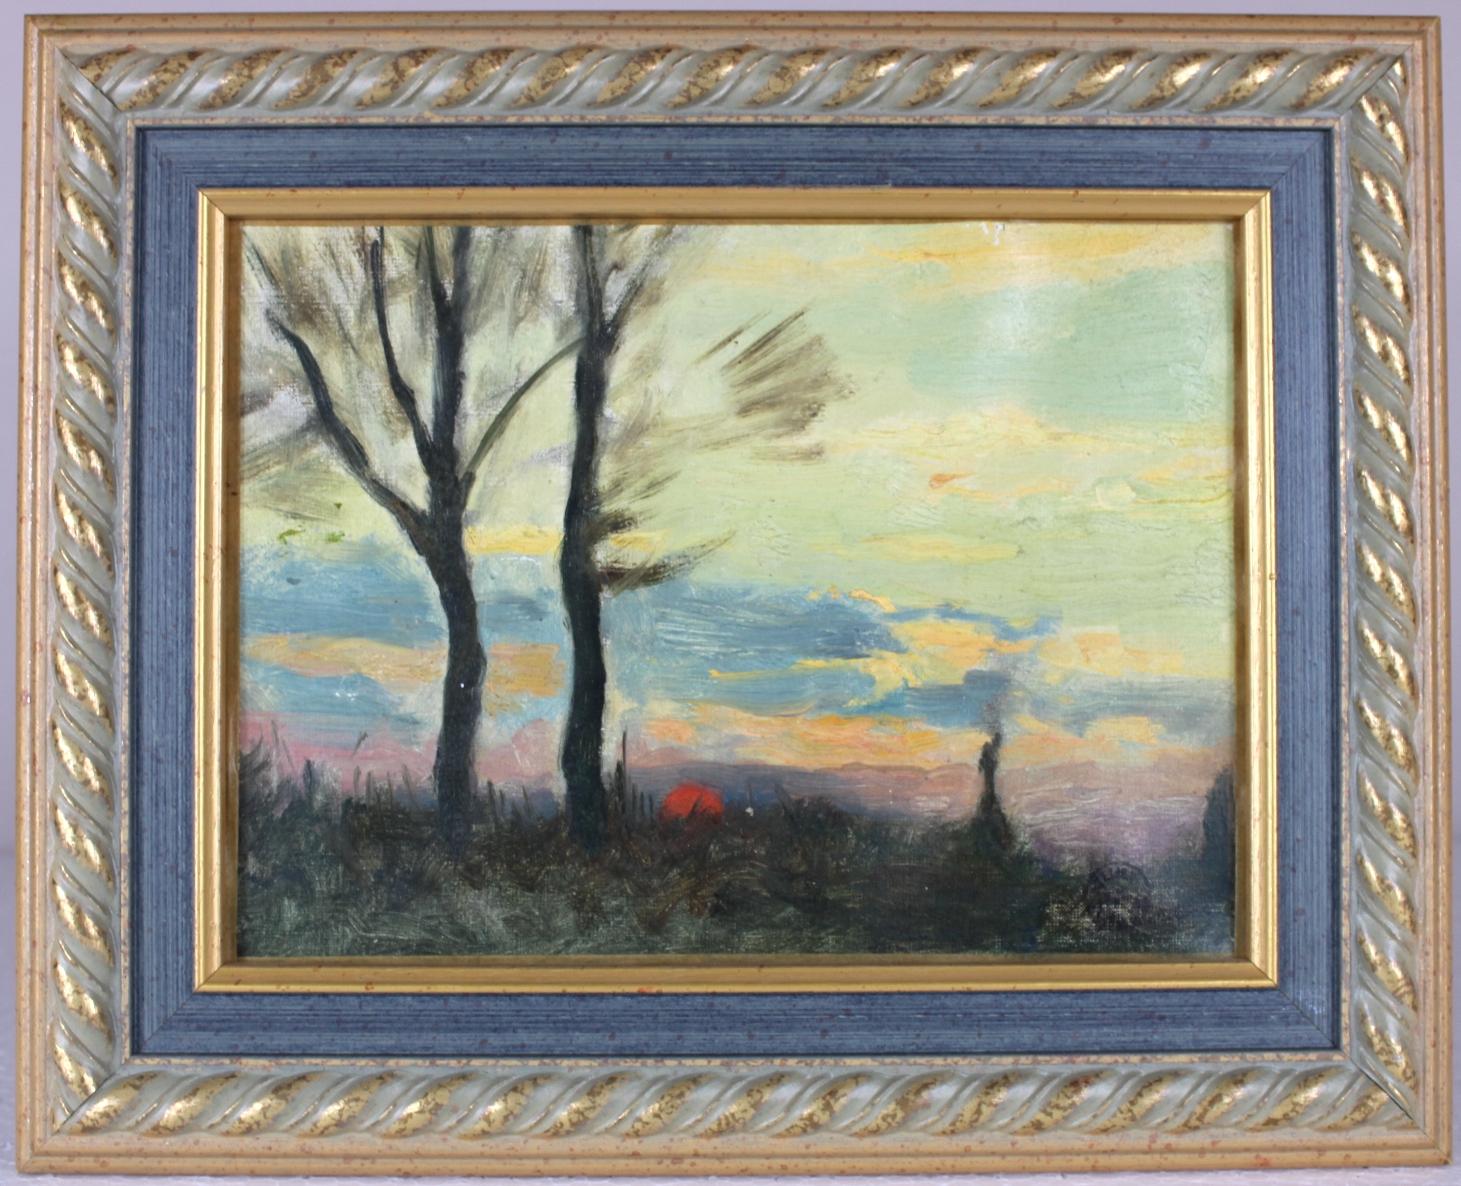 Emile Louis Thivier Figurative Painting - Sunset, Original Oil on Canvas, Impressionist Émile Louis Thivier (1858-1922)